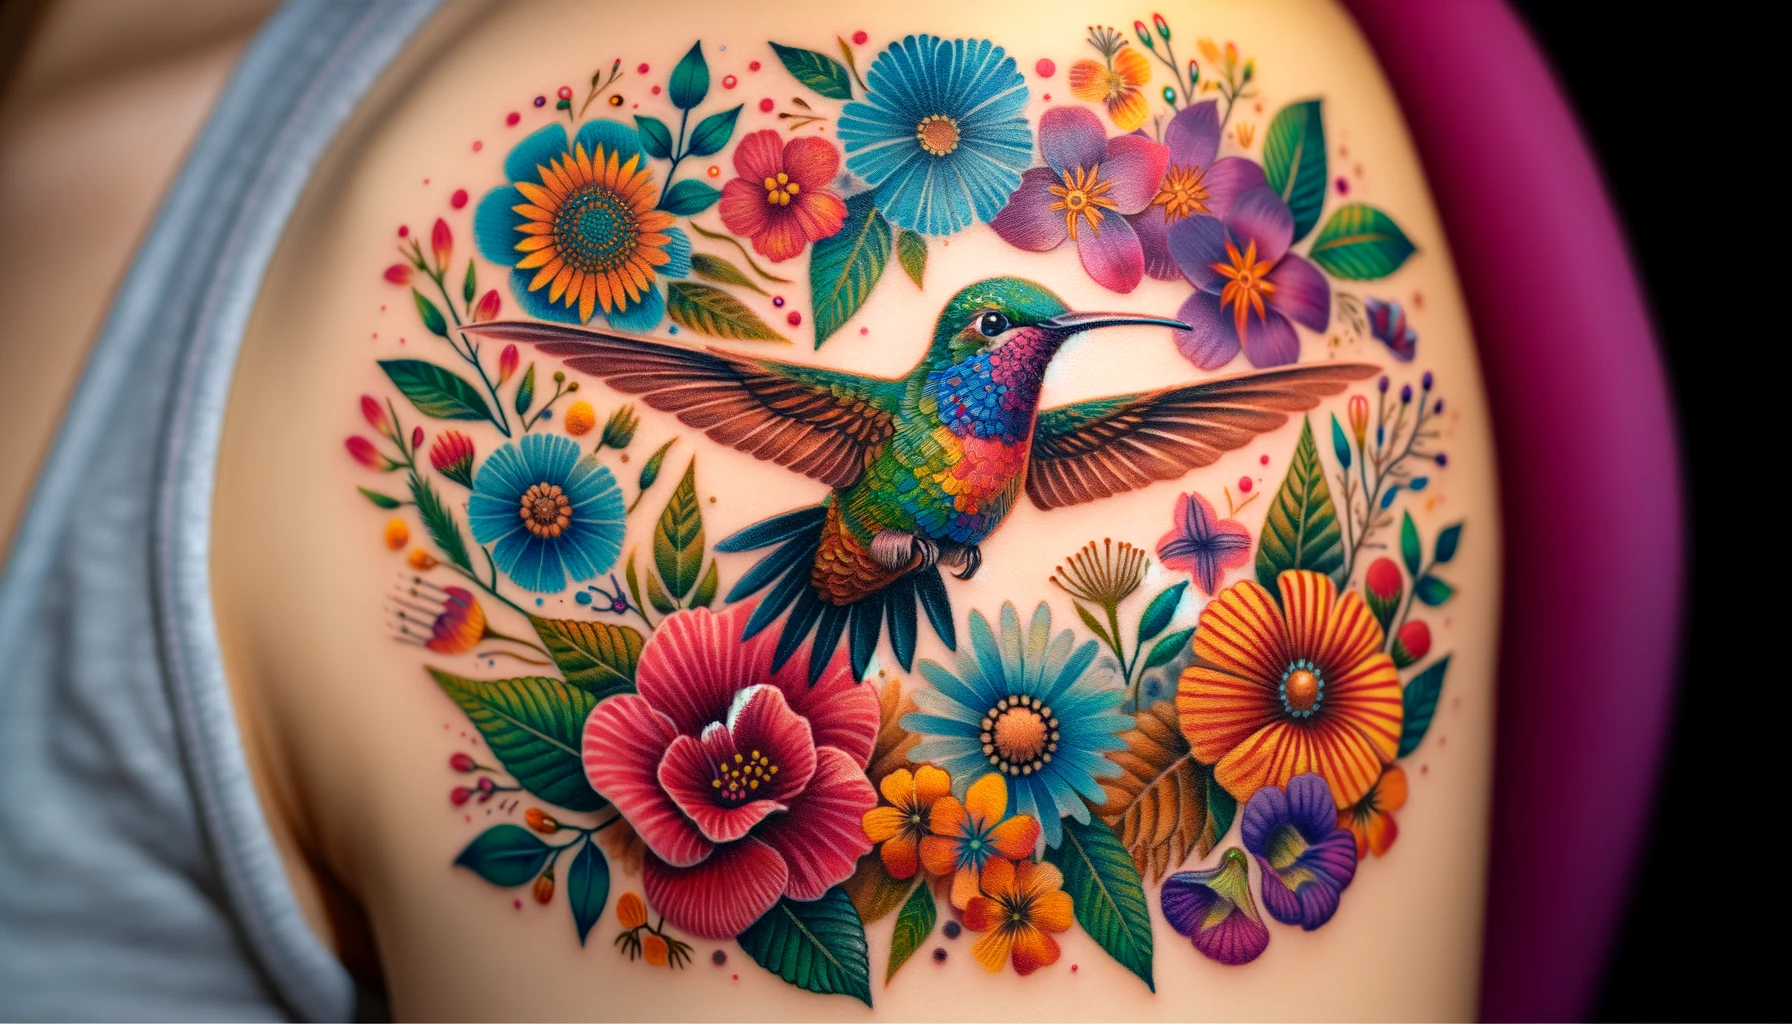 Tatuaż ożywia skórę kaskadą żywych kolorów i kwiatowych motywów z kolibrem w centrum kompozycji. Ptak jest otoczony przez bogate, wielobarwne kwiaty, które tworzą efekt pełen dynamiki i życia